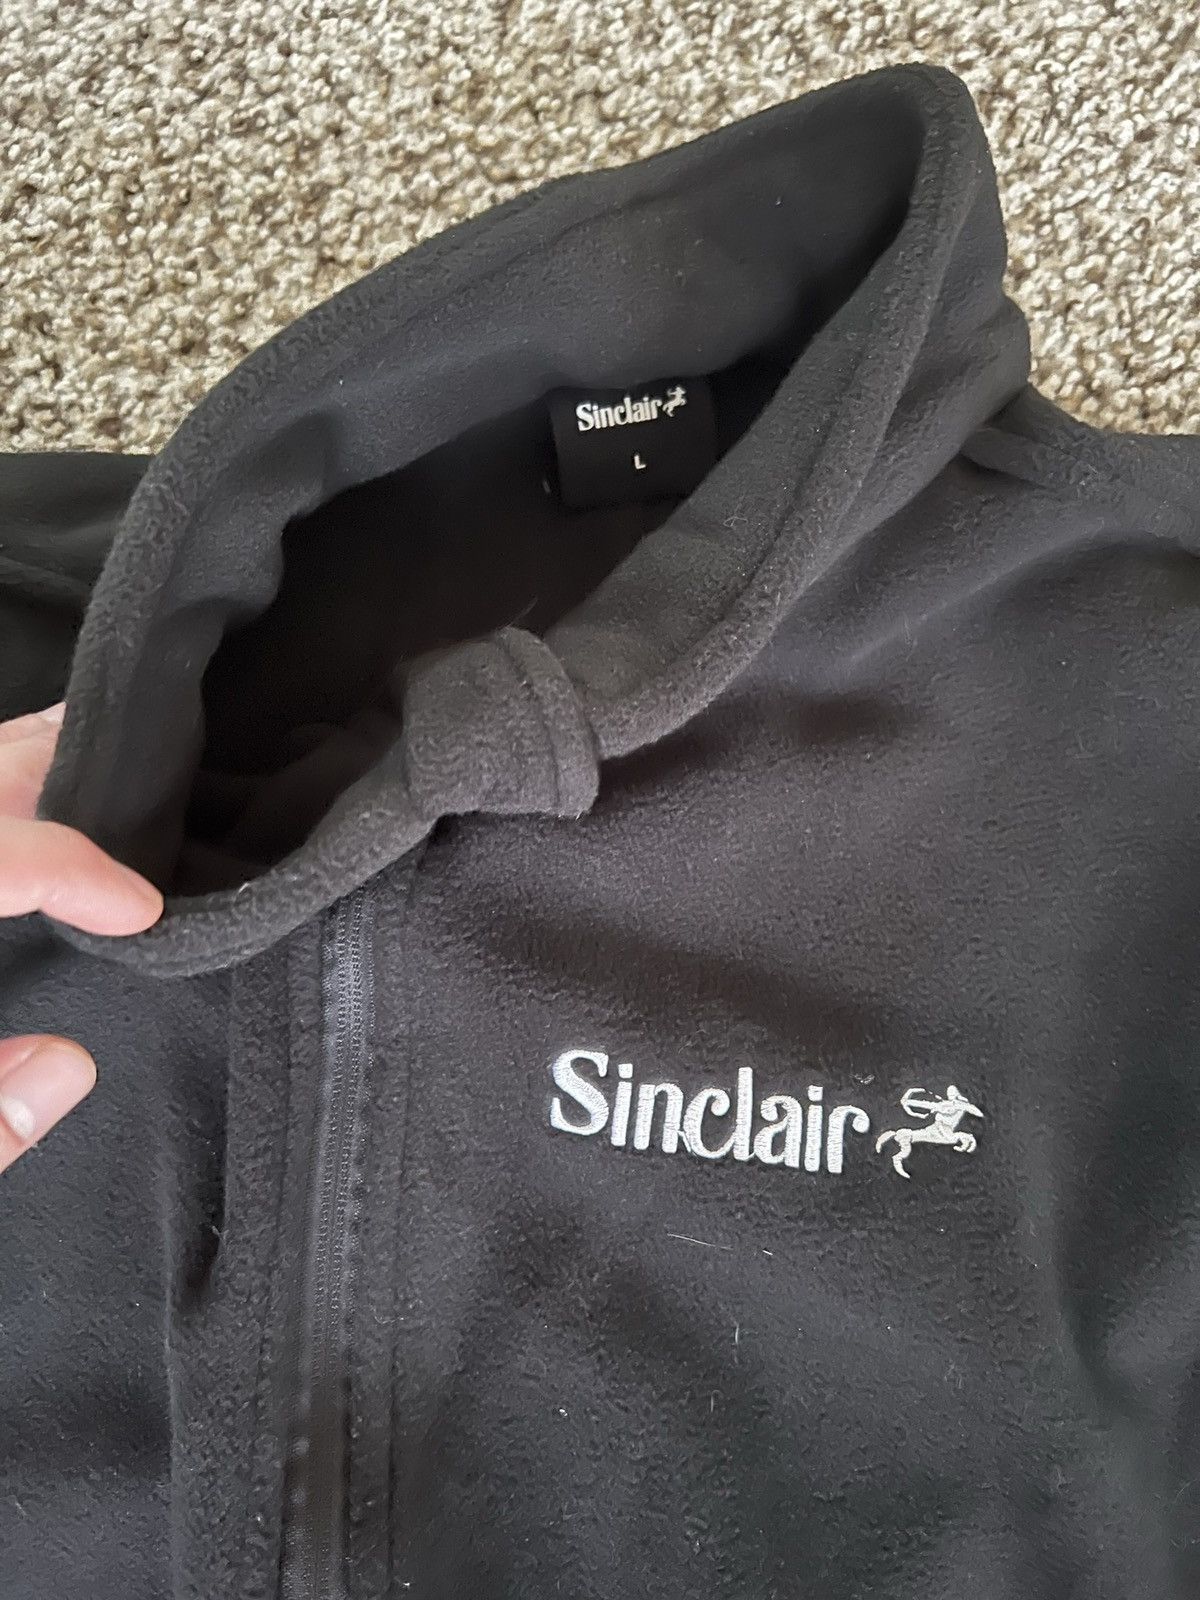 Sinclair Global Sinclair Fleece L Size US L / EU 52-54 / 3 - 2 Preview